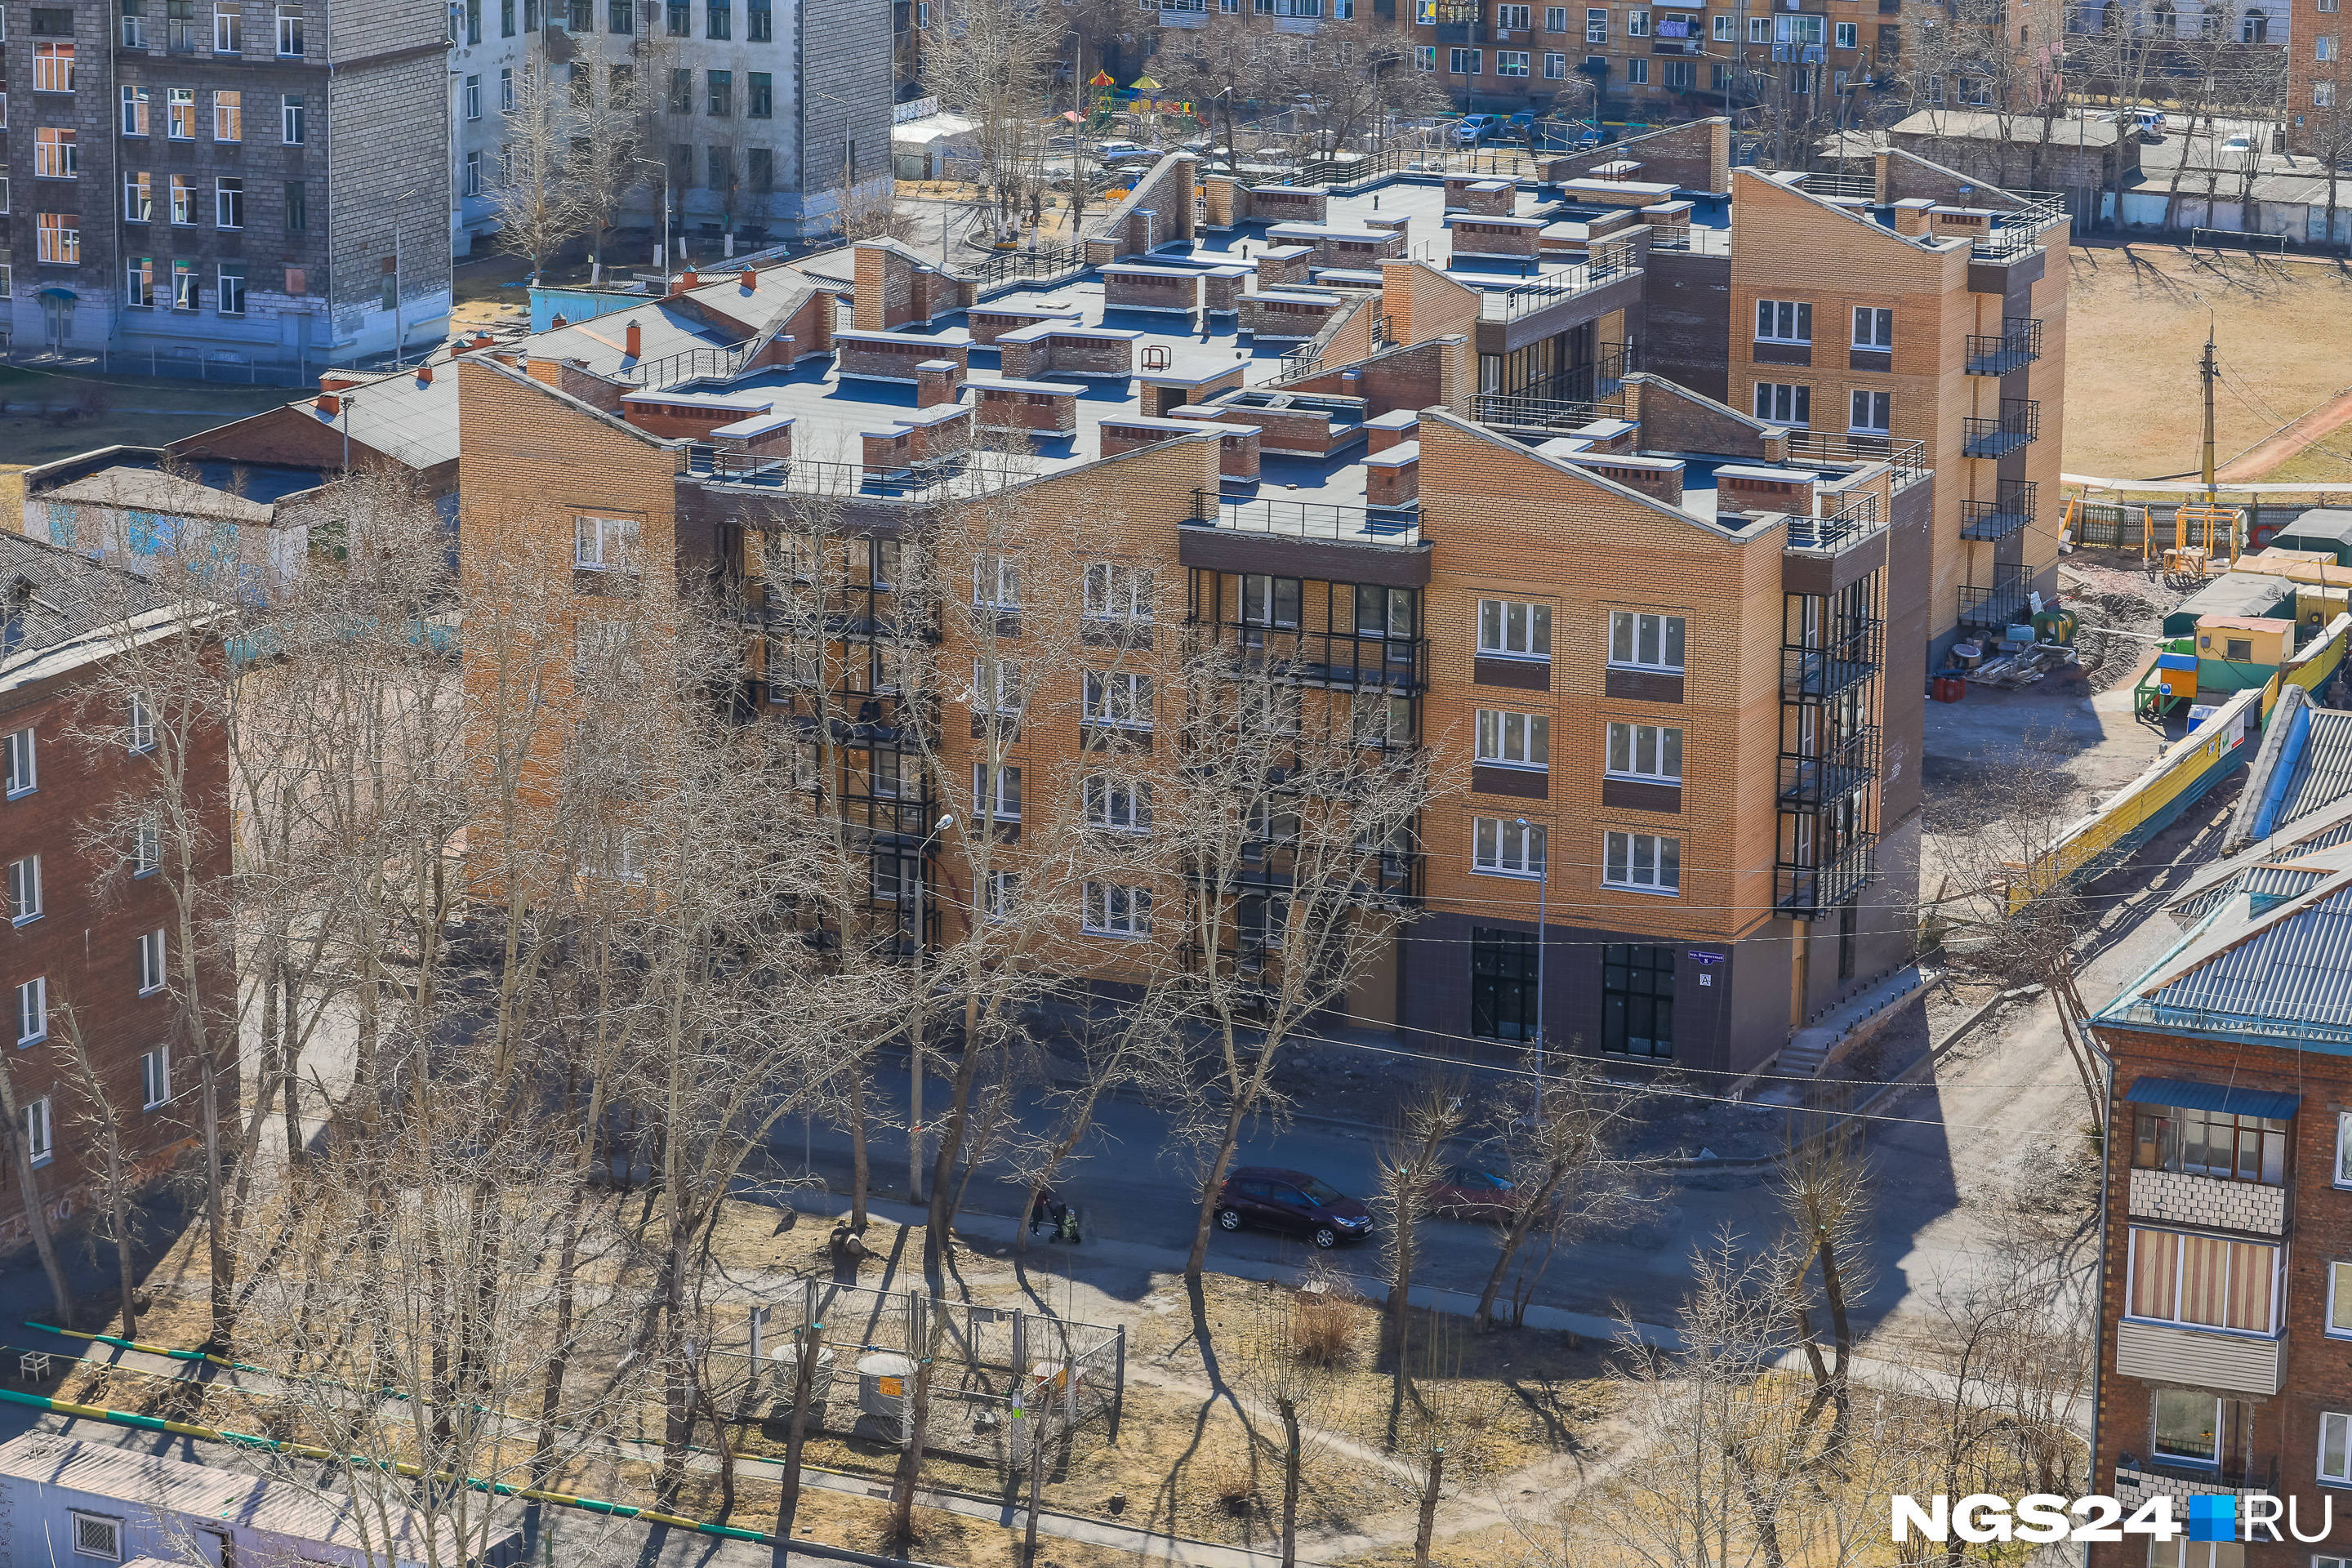 Дом один из немногих в Красноярске ниже 5 этажей 